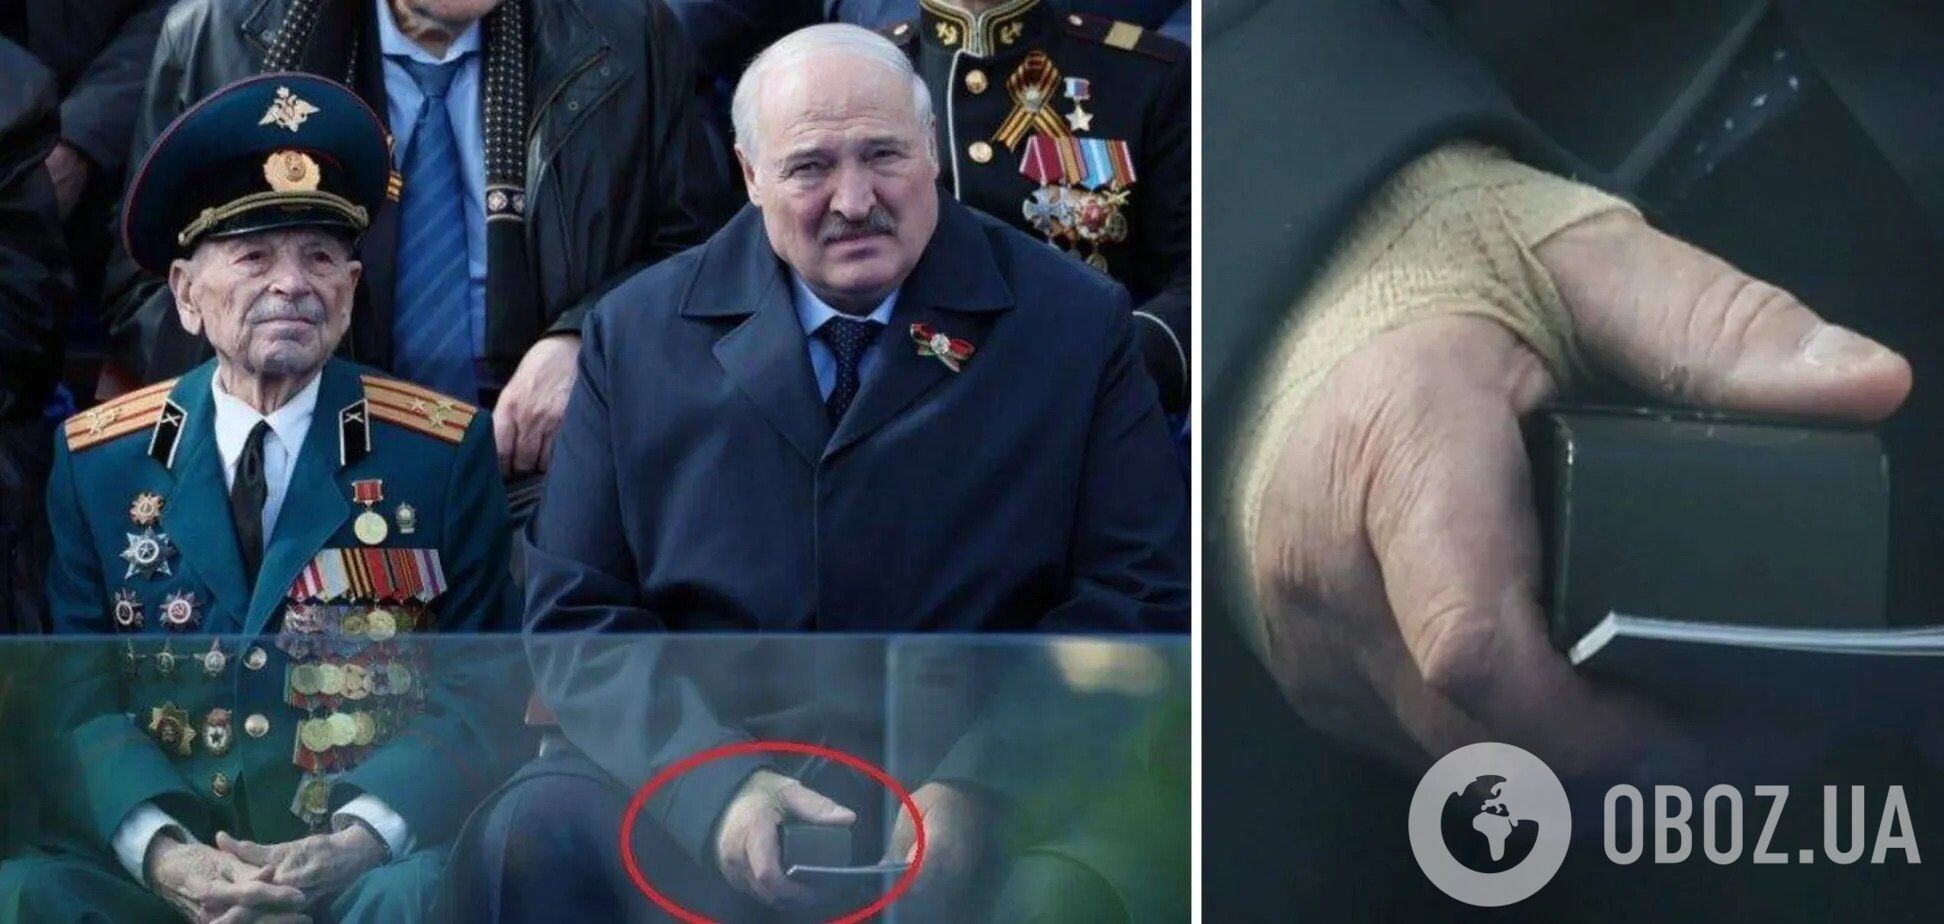 "Никто не может понять, что происходит": СМИ рассказали о состоянии Лукашенко и выдвинули главную версию